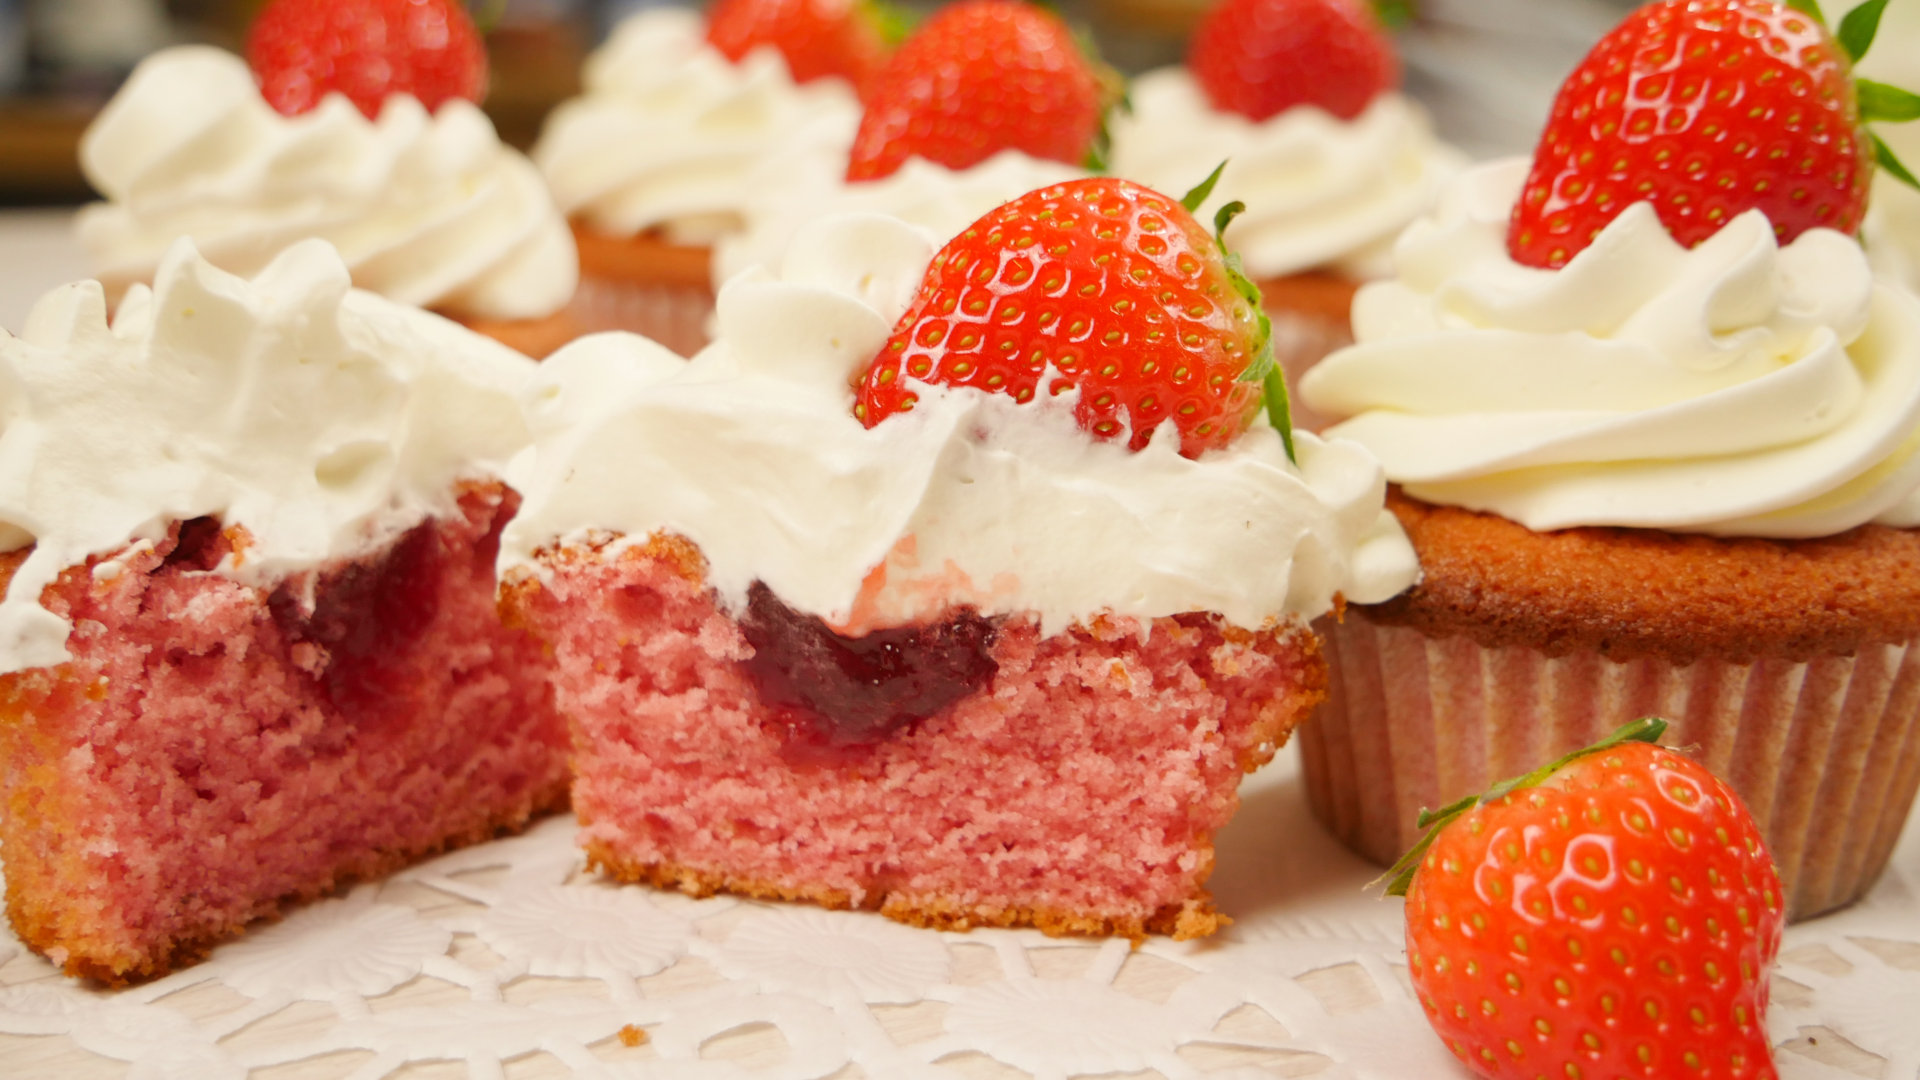 Gefüllte Erdbeer Cupcakes | Strawberry Cupcakes | Erdbeer Sahne ...